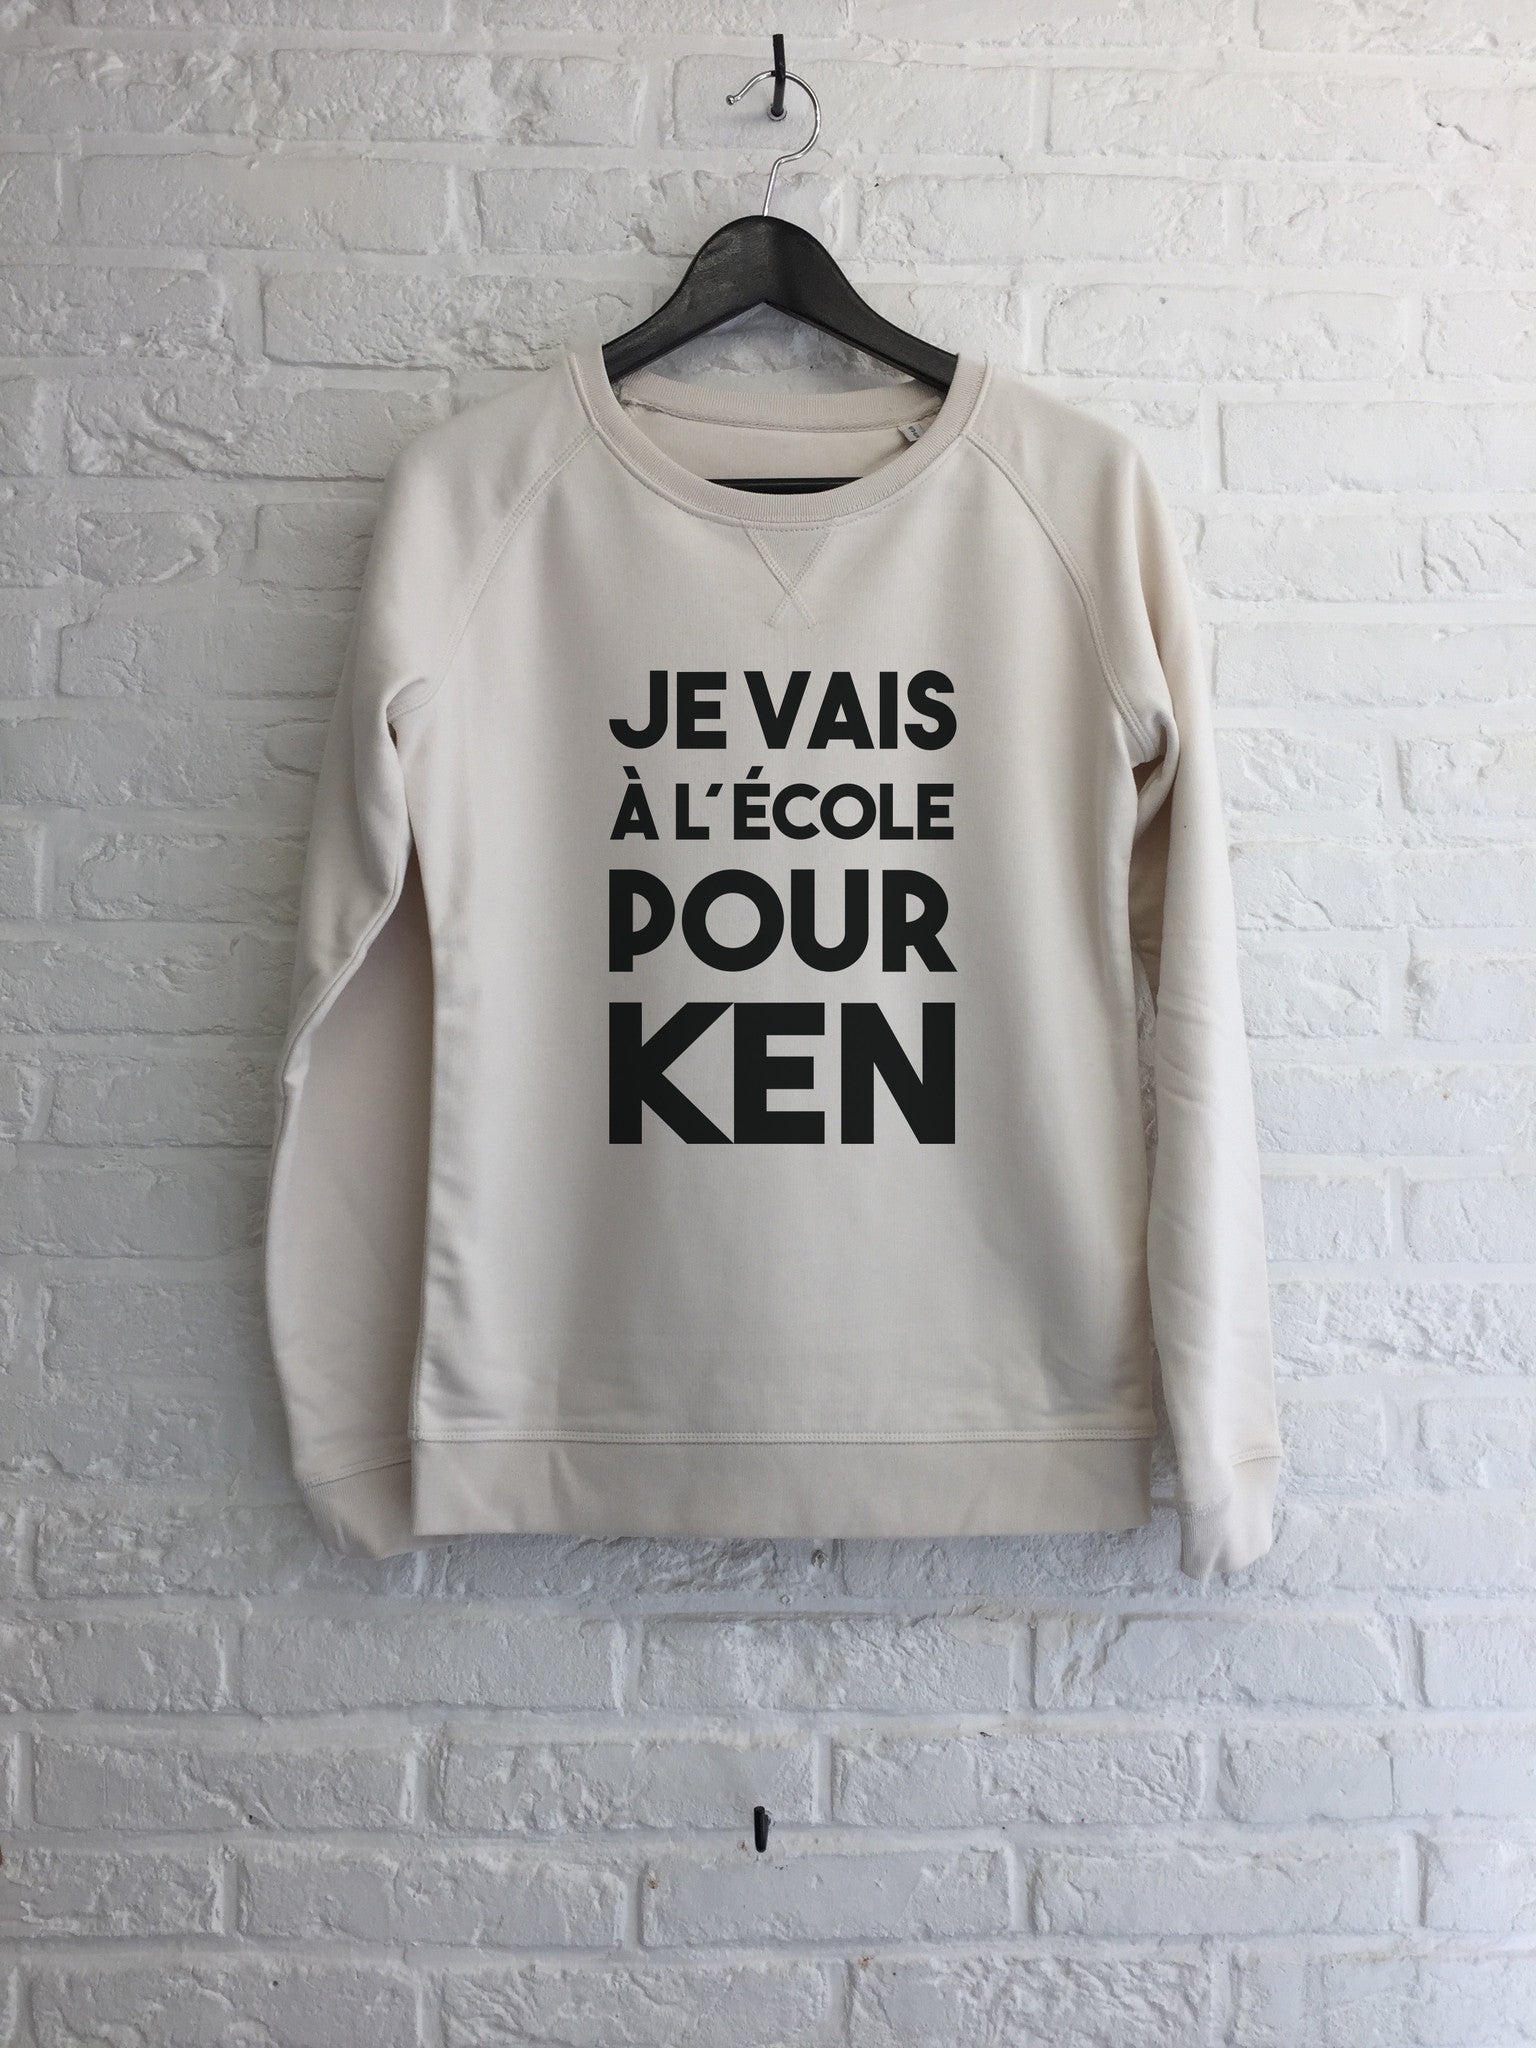 Je vais a l'ecole pour Ken- Sweat - Femme-Sweat shirts-Atelier Amelot